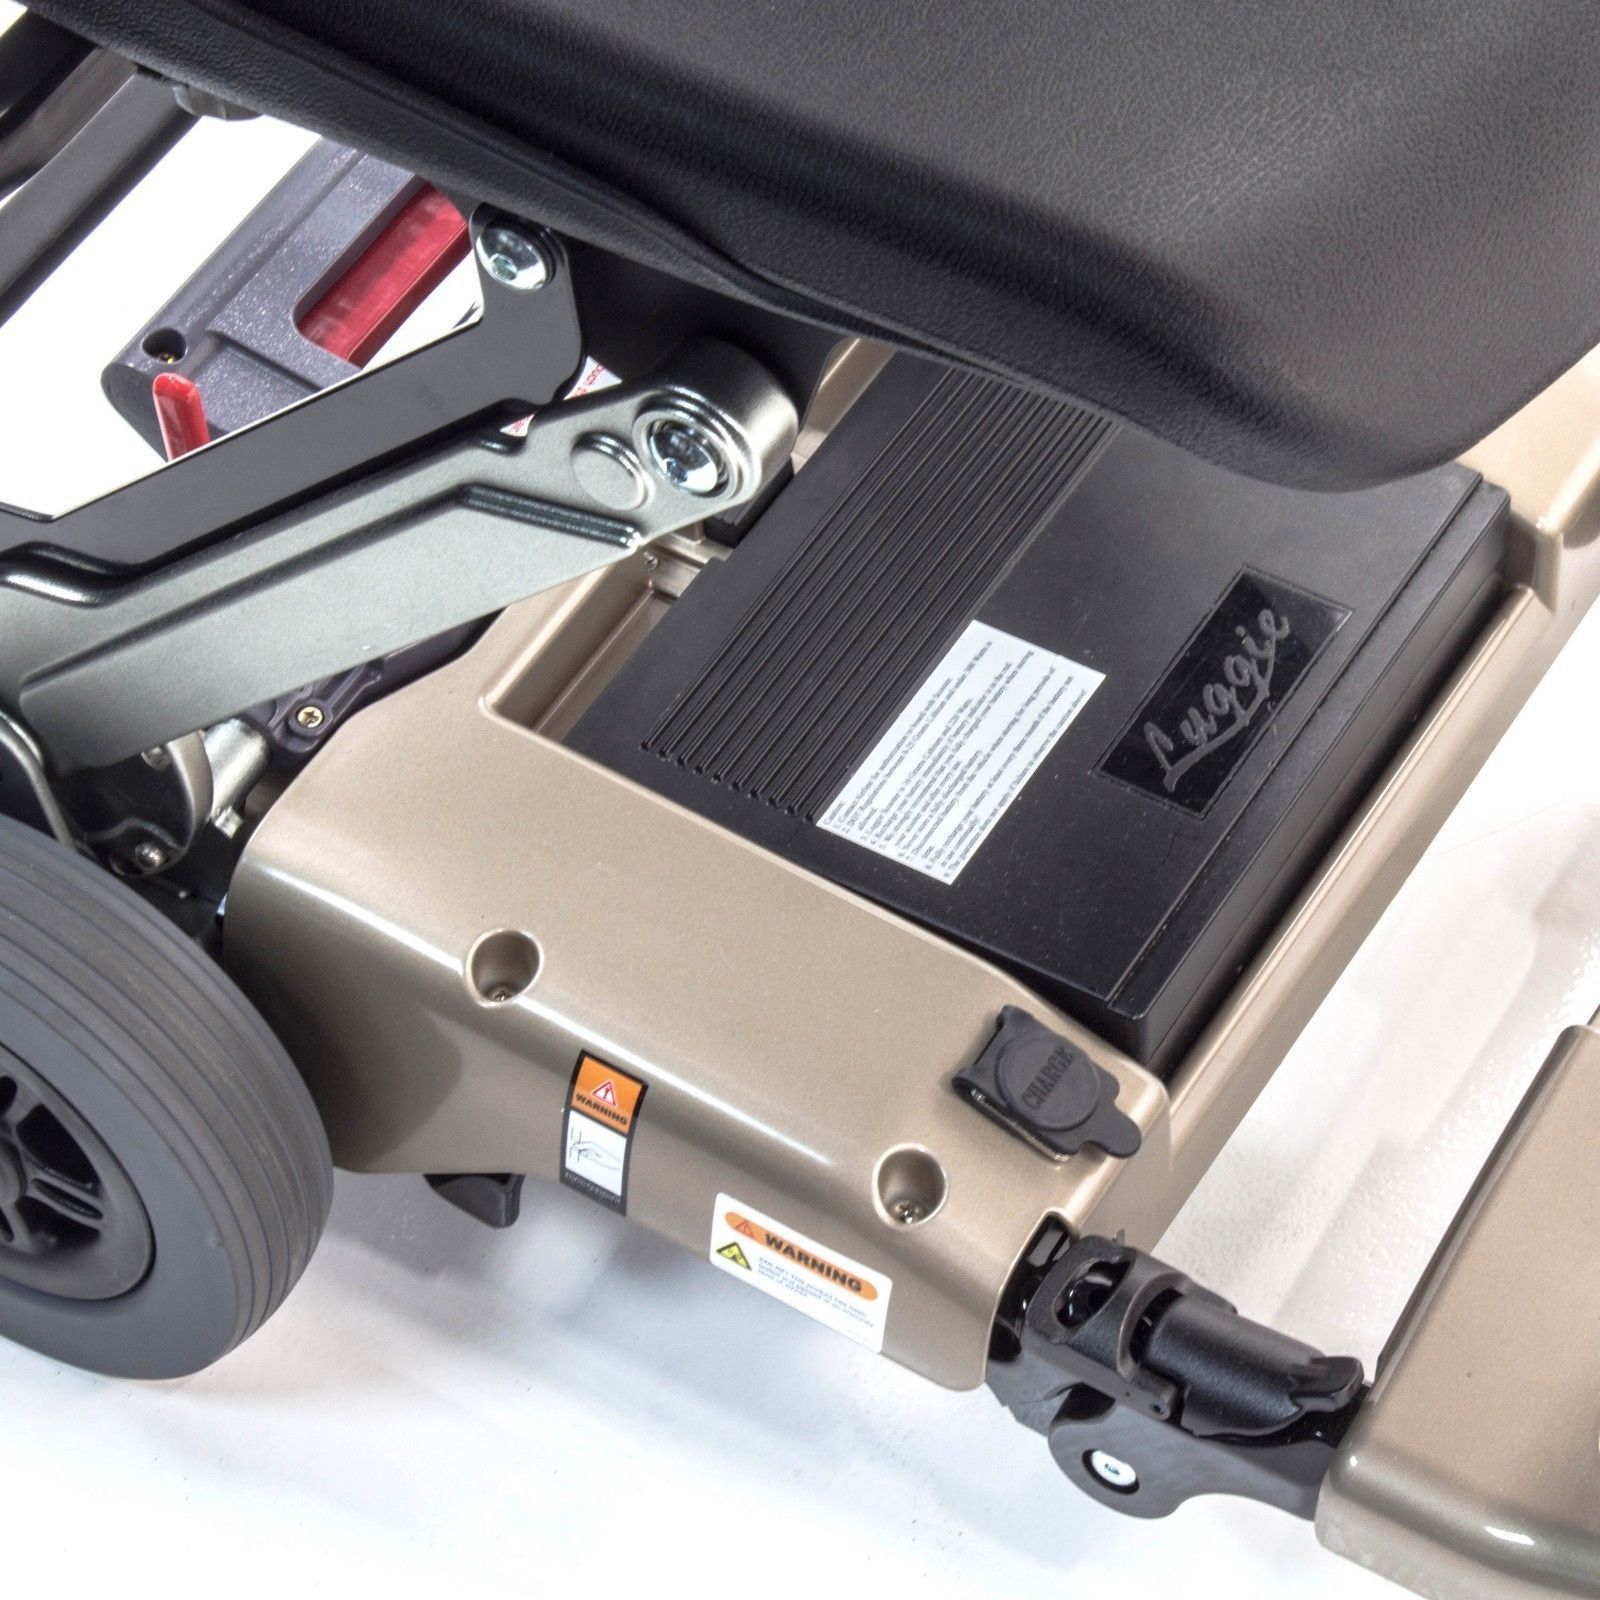 Scooter LUGGIE pliage manuel - Batterie Lithium, idéal pour mobilité réduite, avec siège 4 roues